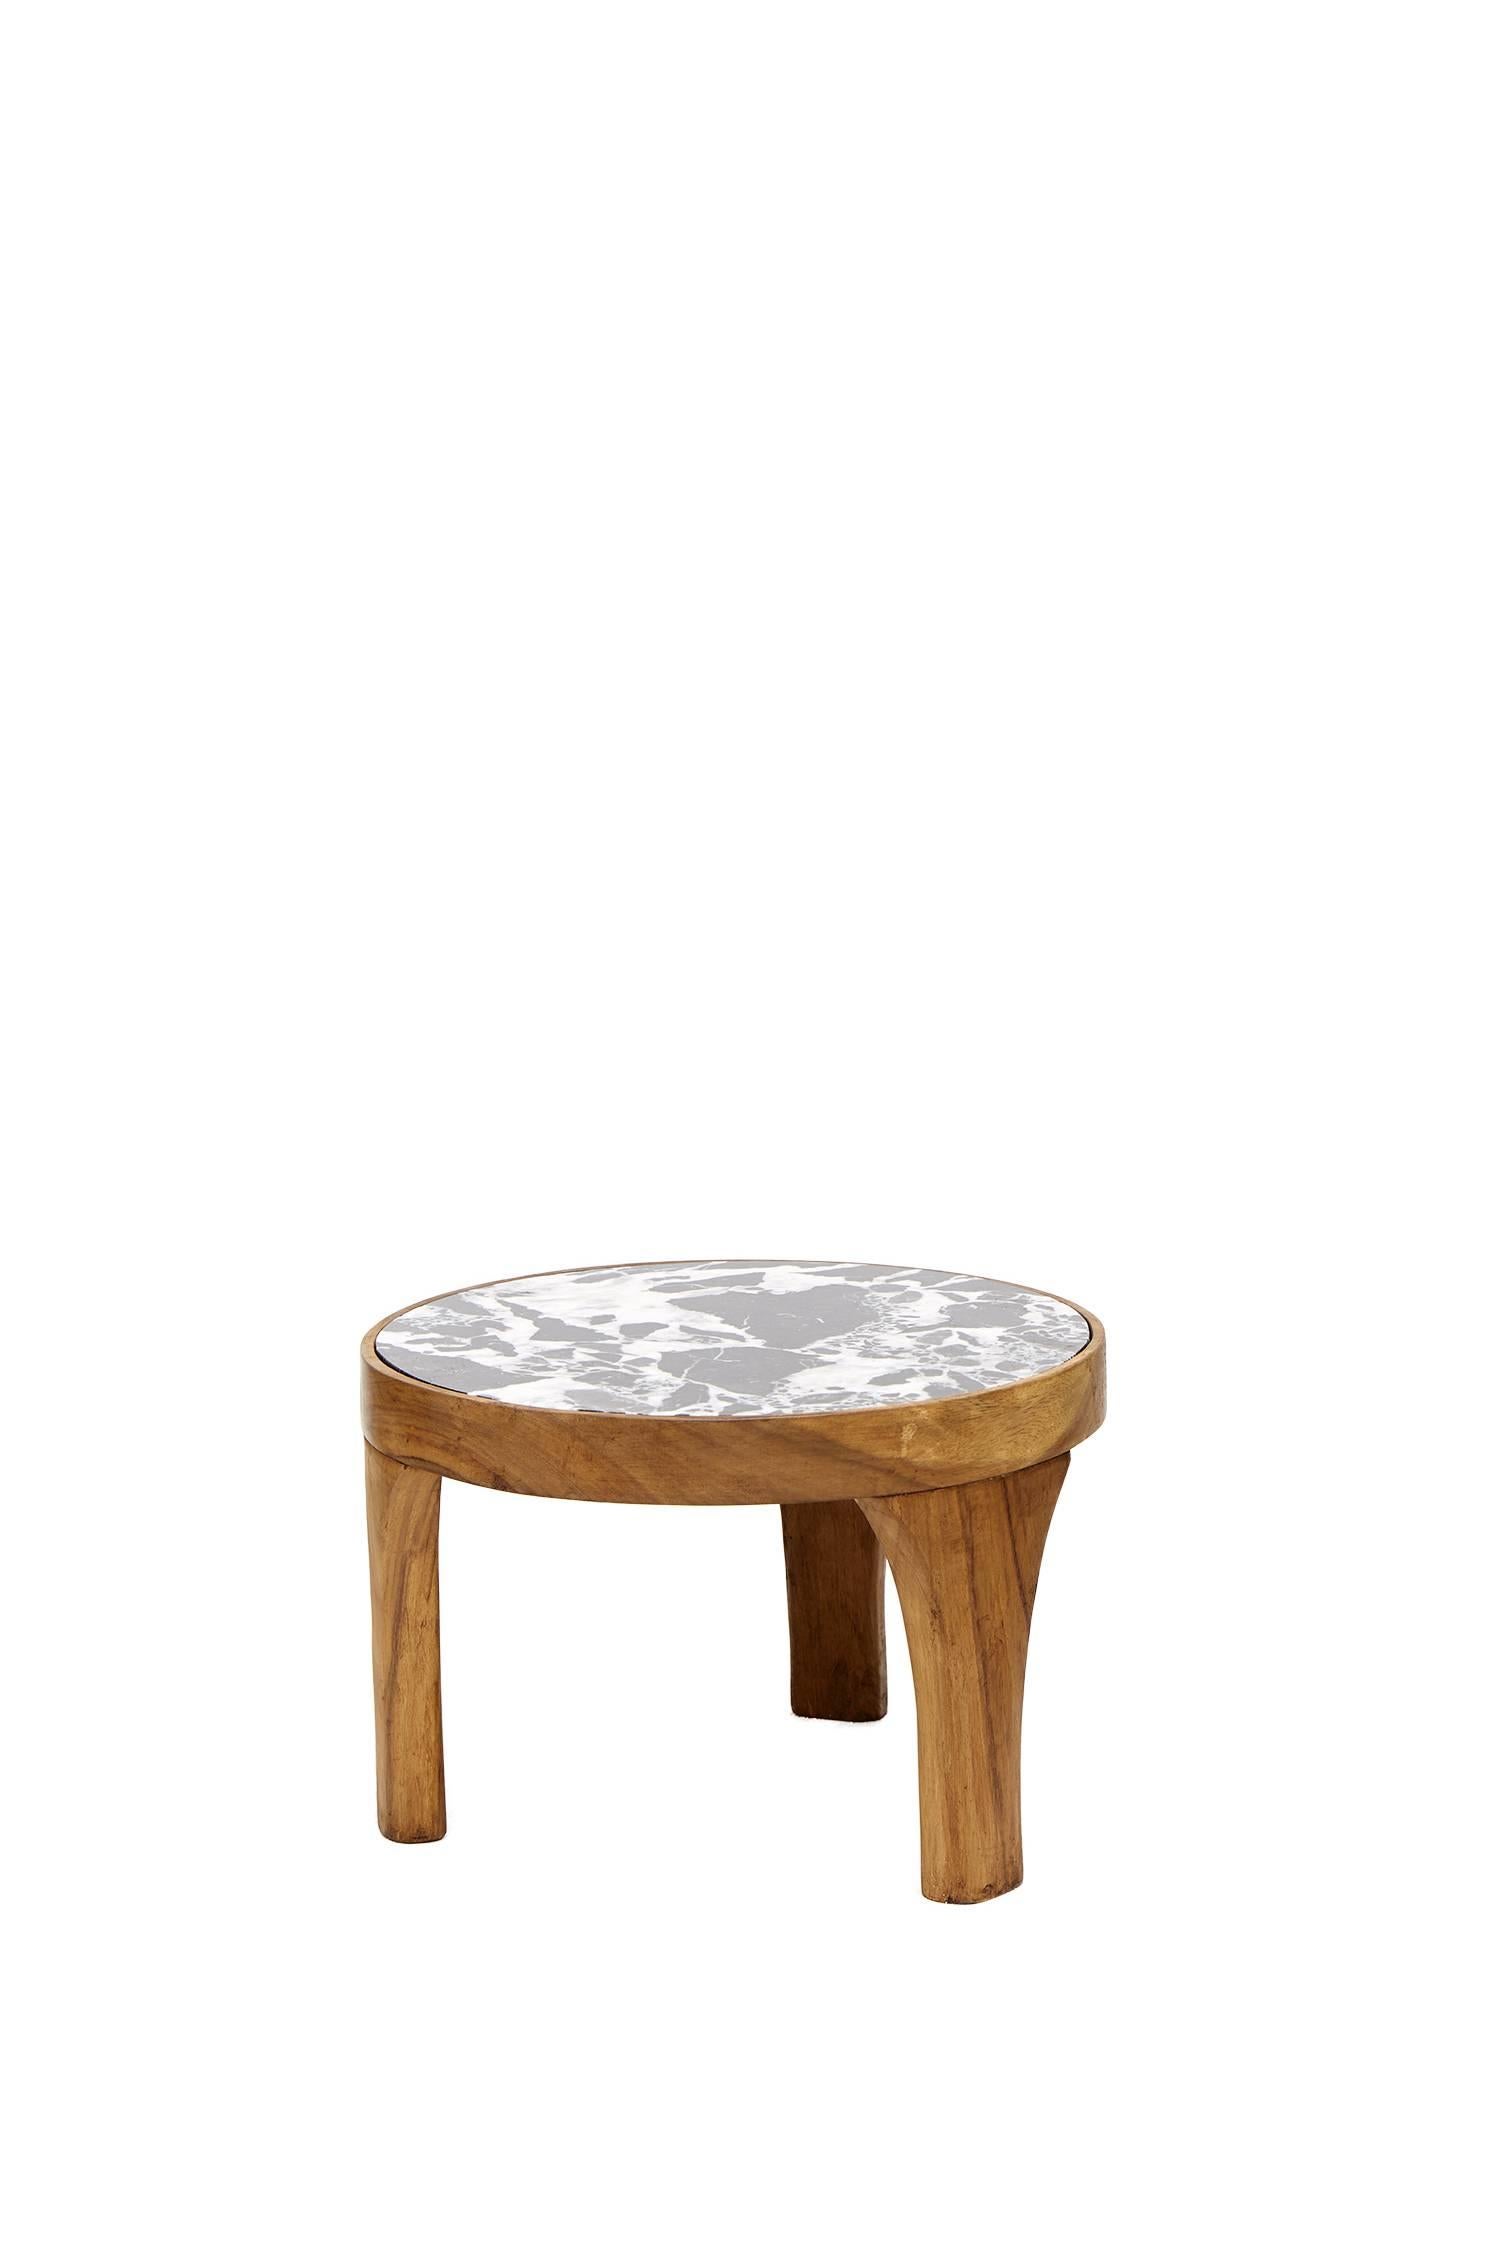 Cet ensemble de deux tables centrales Marcelino fabriquées à la main est une création unique de Leon Leon Design de Mexico. Tous deux sont fabriqués en bois tropical massif de Parota et sculptés à la main, le grand est accompagné d'un plateau de